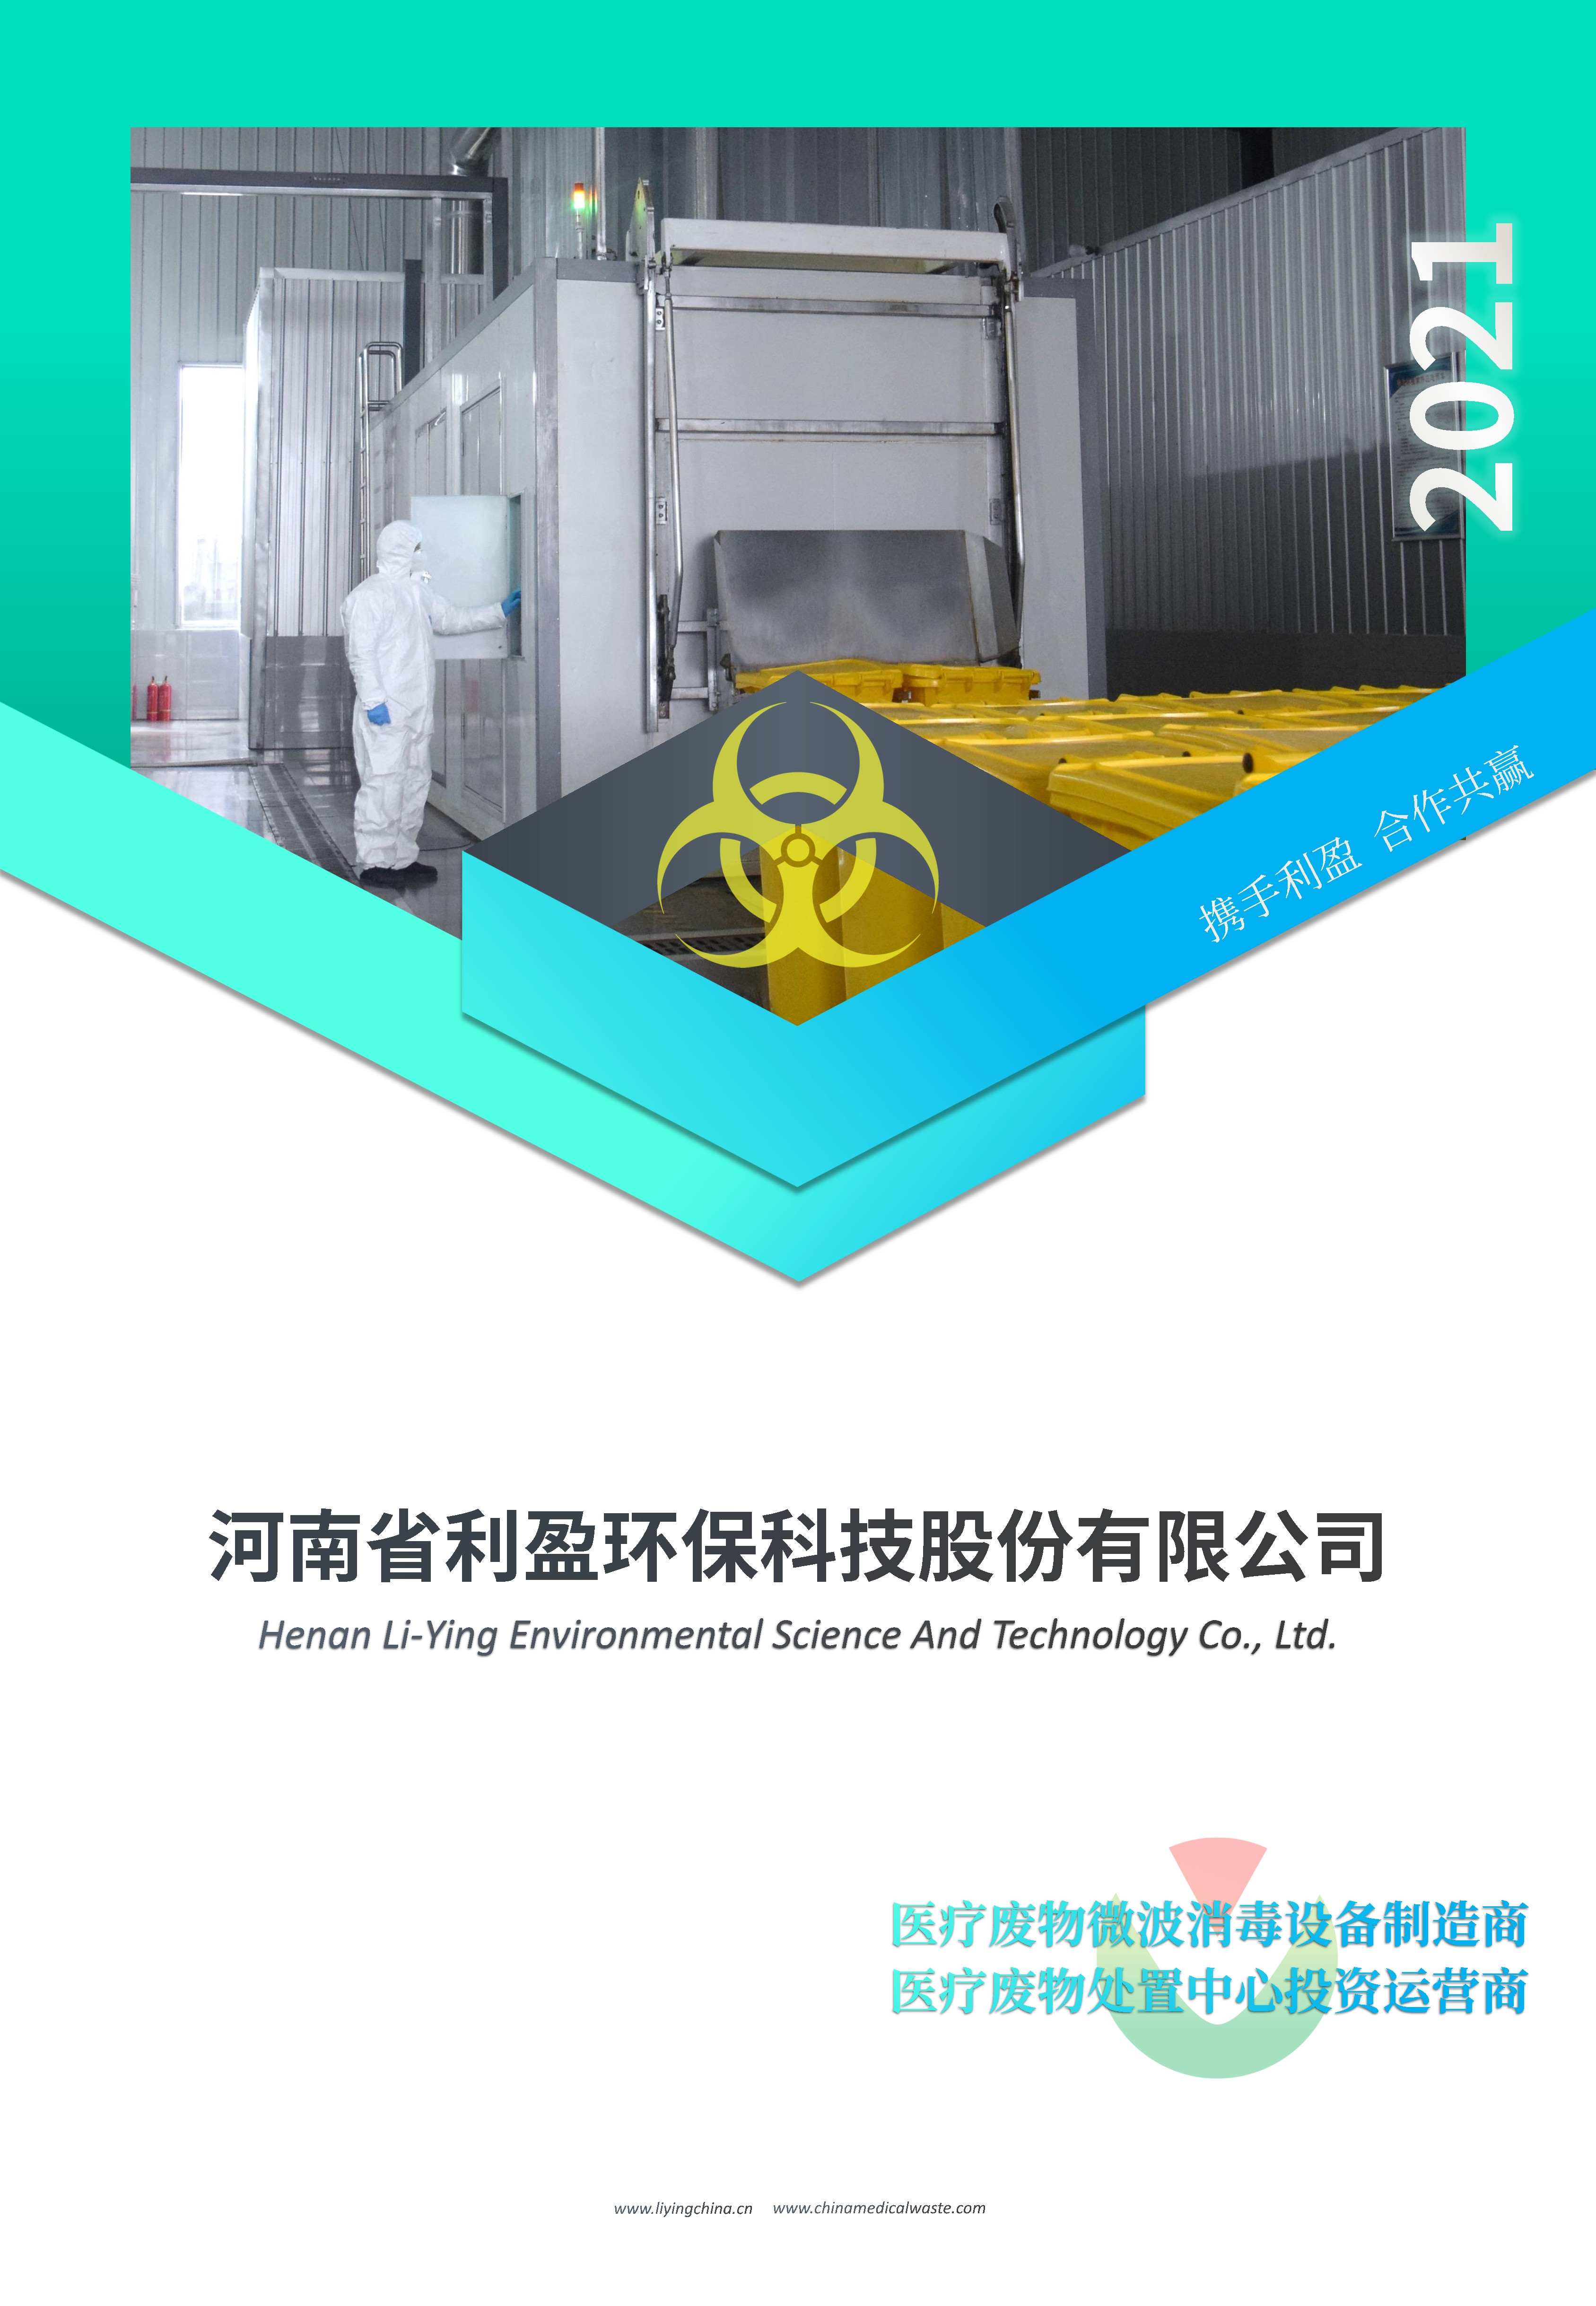 医疗废物微波消毒设备MDU-10B型 利盈专用车生产销售